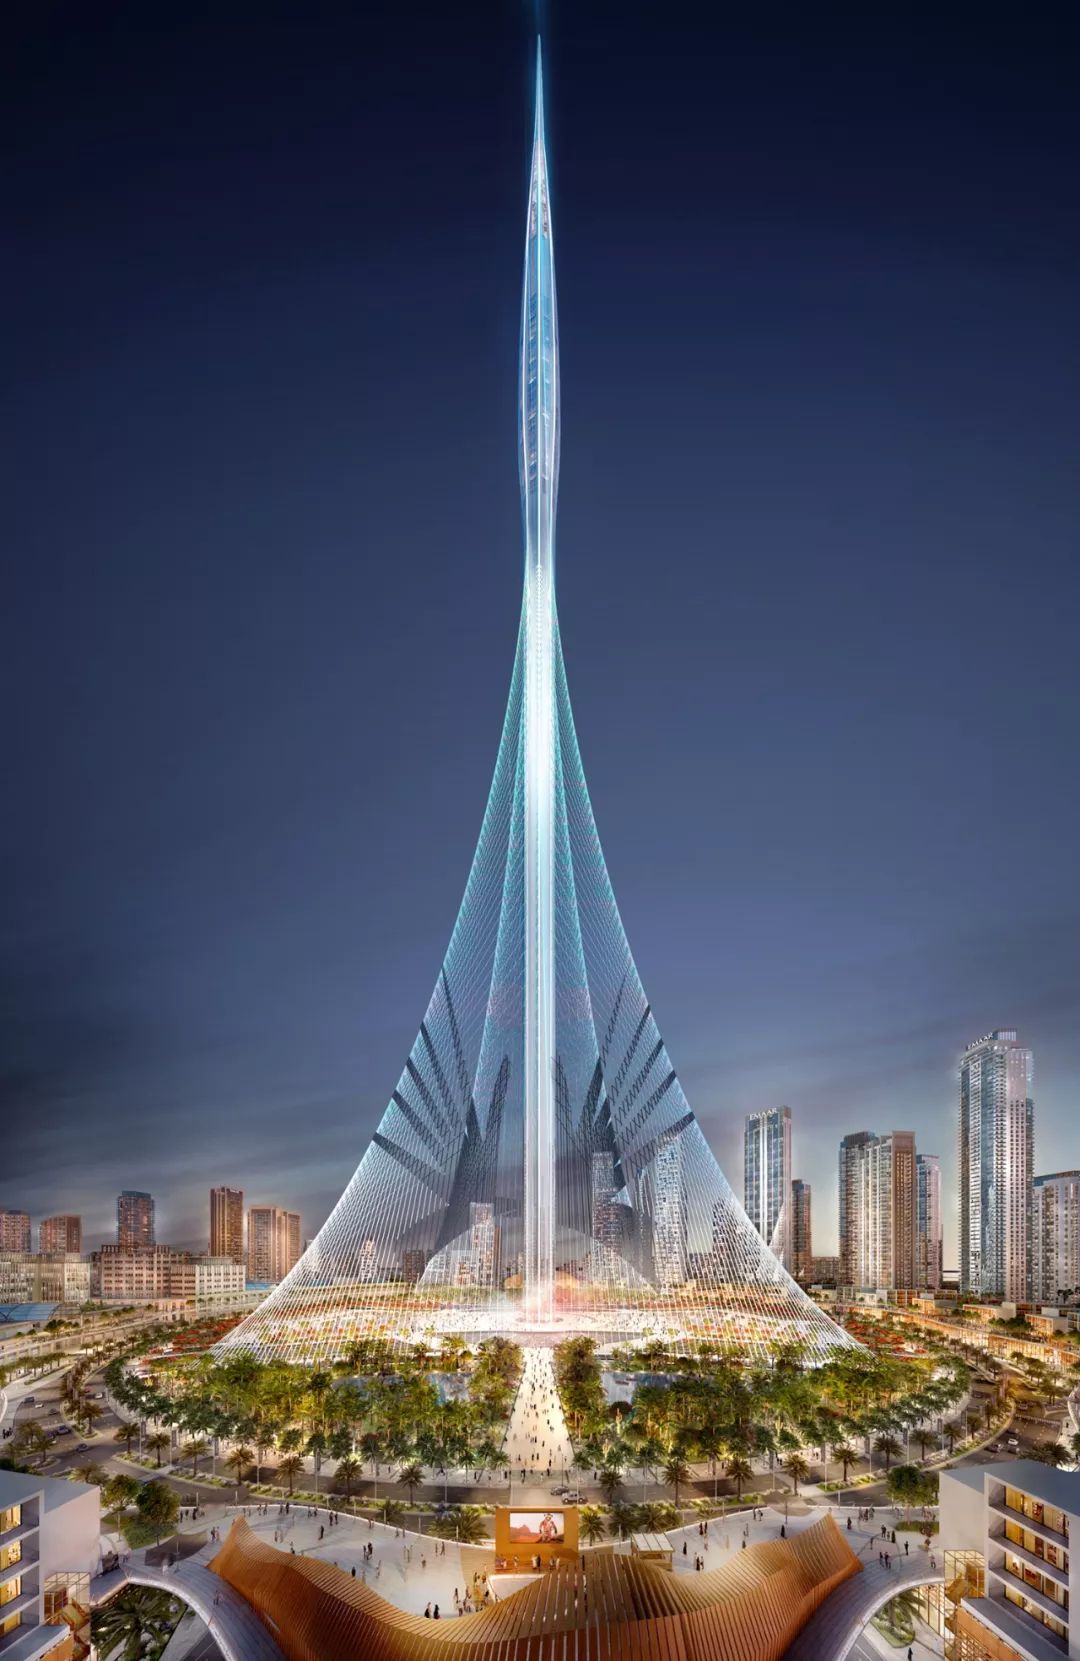 迪拜能让人忘掉所有的抱怨,它又来创造奇迹了,在建的未来第一高塔迪拜